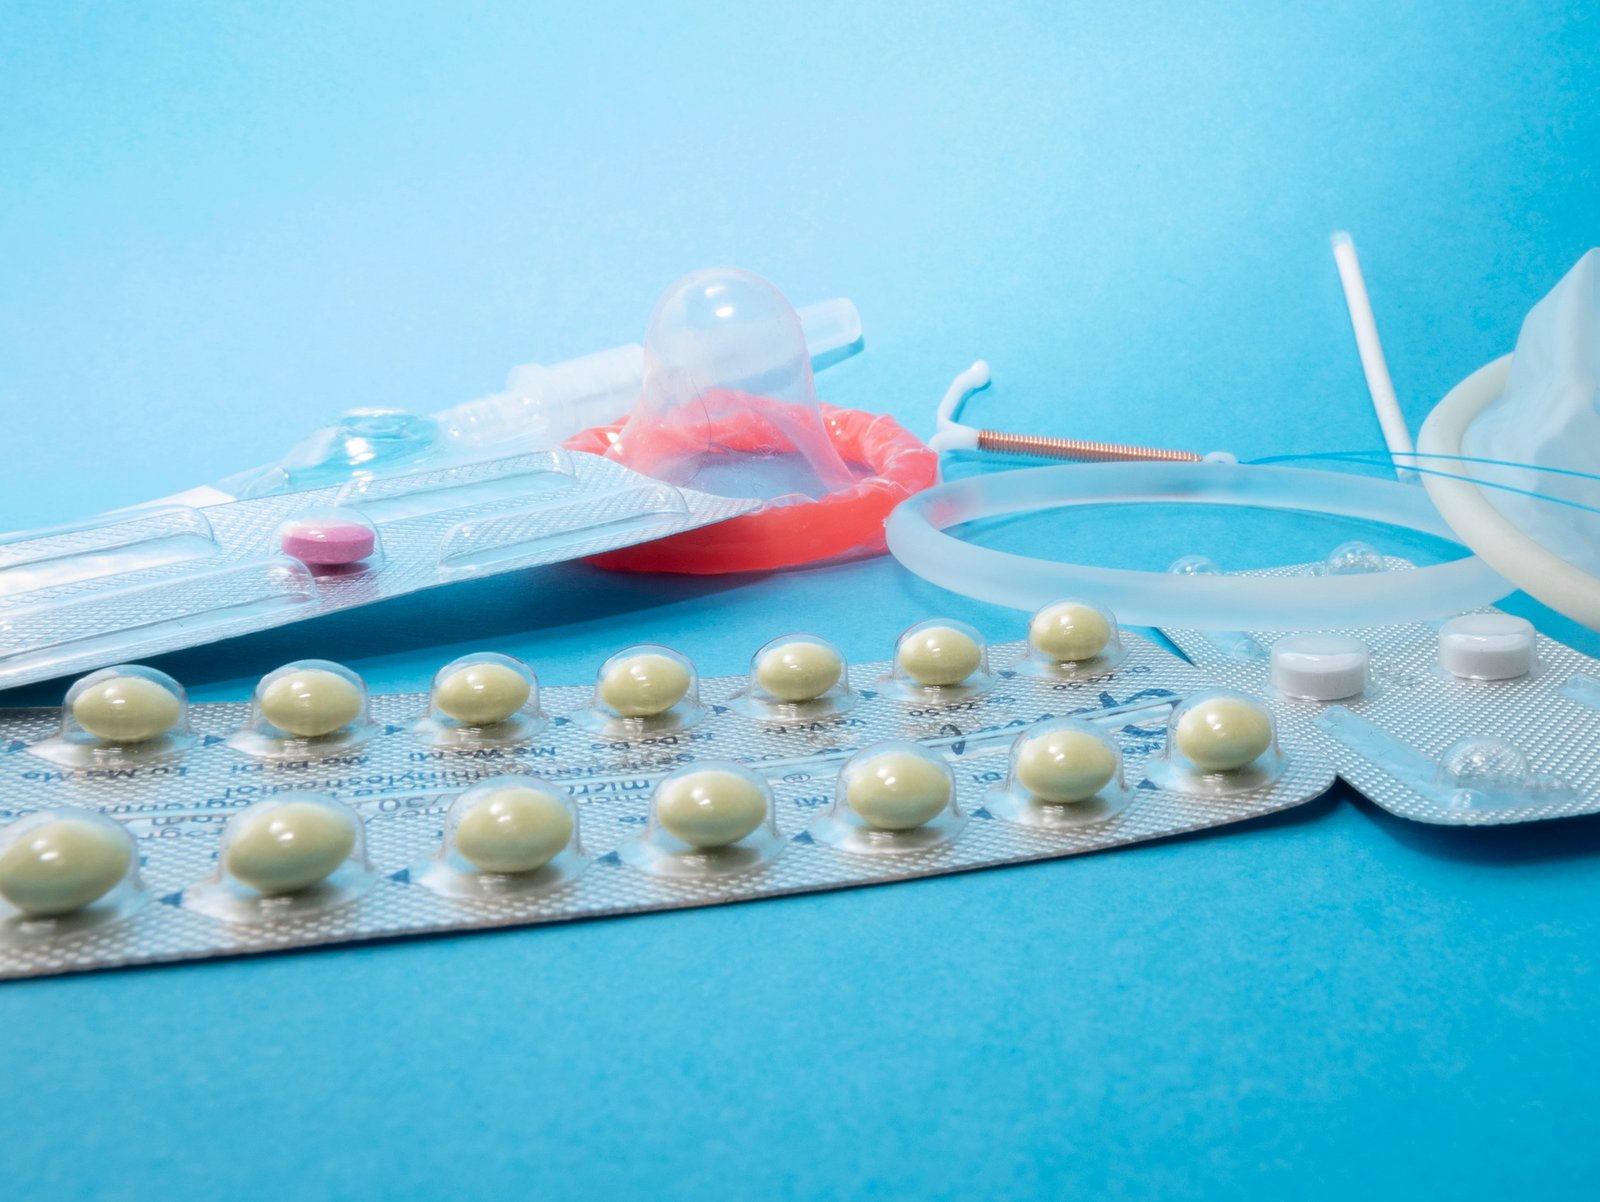 Prezervatif, doğum kontrol hapı ve diğer kontraseptifler